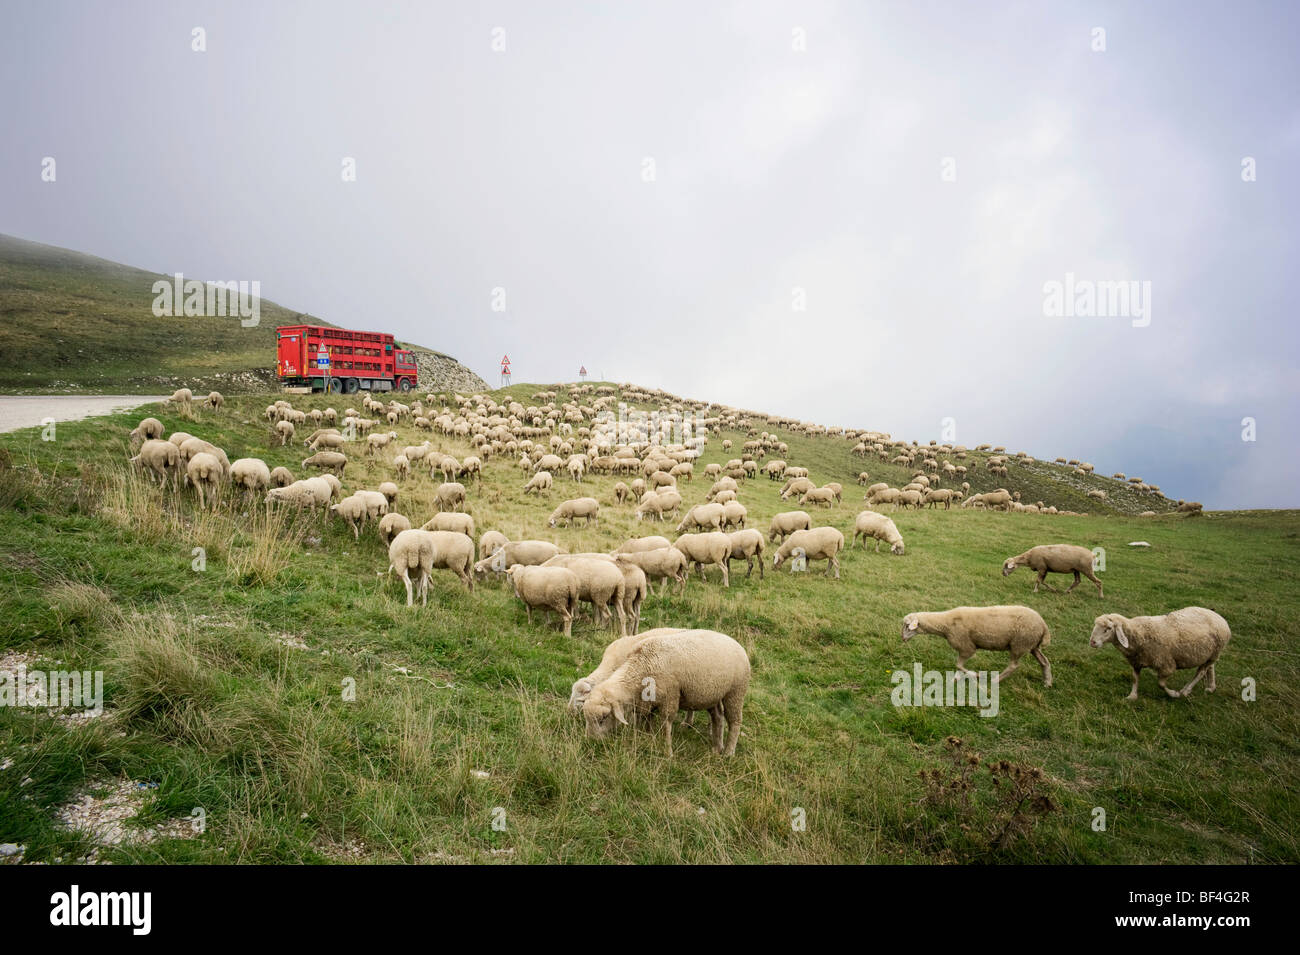 Parte de un rebaño de ovejas transportadas lejos, Monte Sibillini mountinas, Apeninos, Le Marche, Italia, Europa Foto de stock